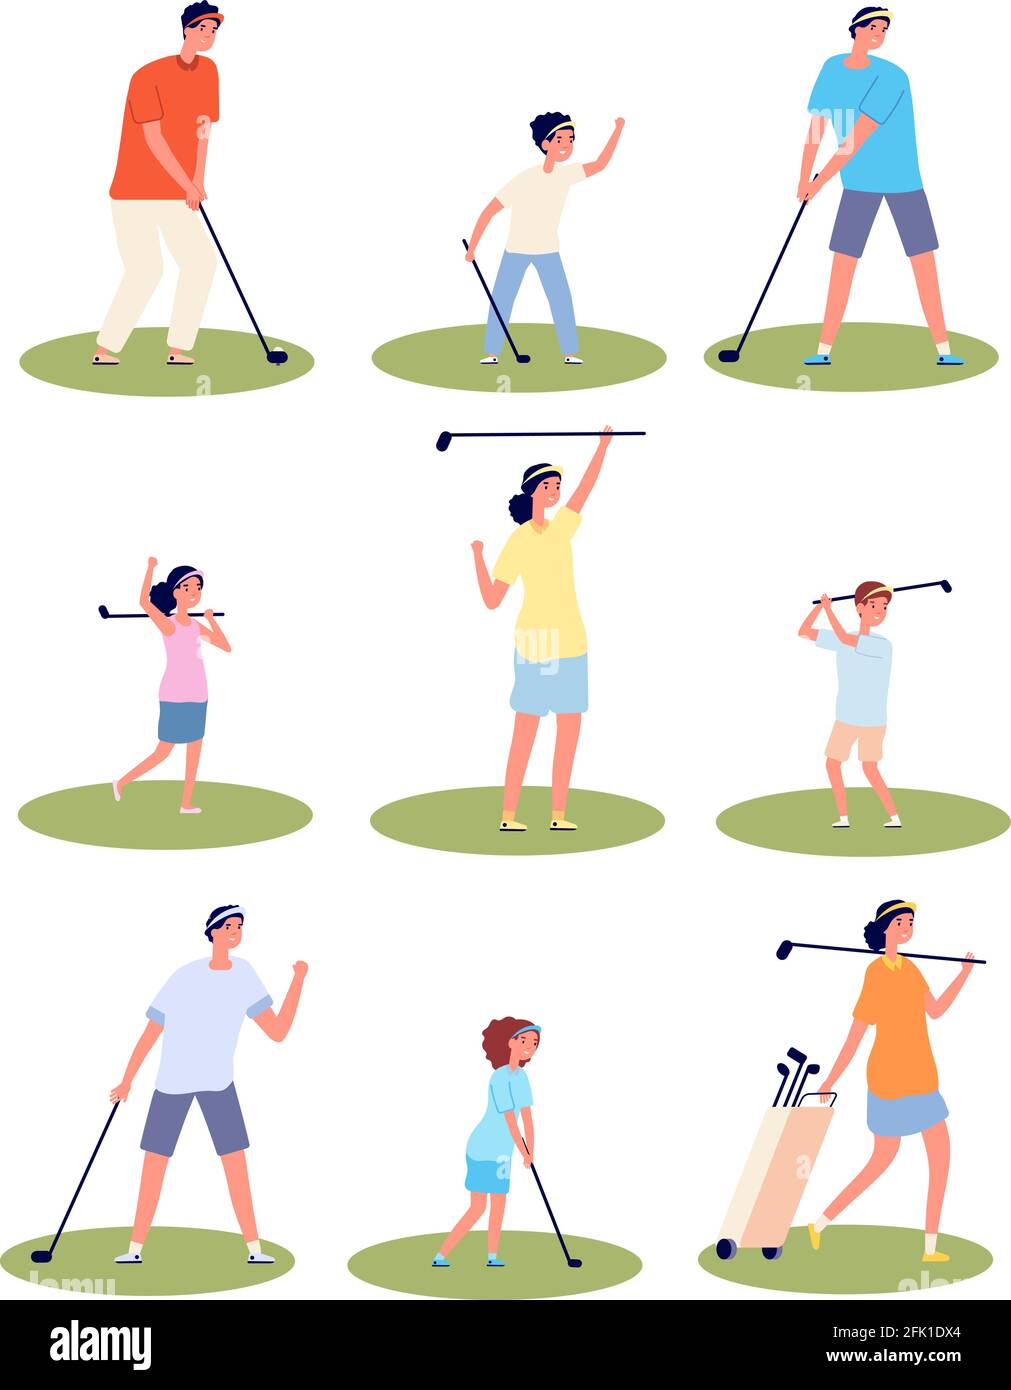 Personajes de los jugadores de golf. Hombres mujeres jugando, golfistas aislados con equipo y bolsas. Juego de vector deportivo de recreación al aire libre hembra plano Ilustración del Vector